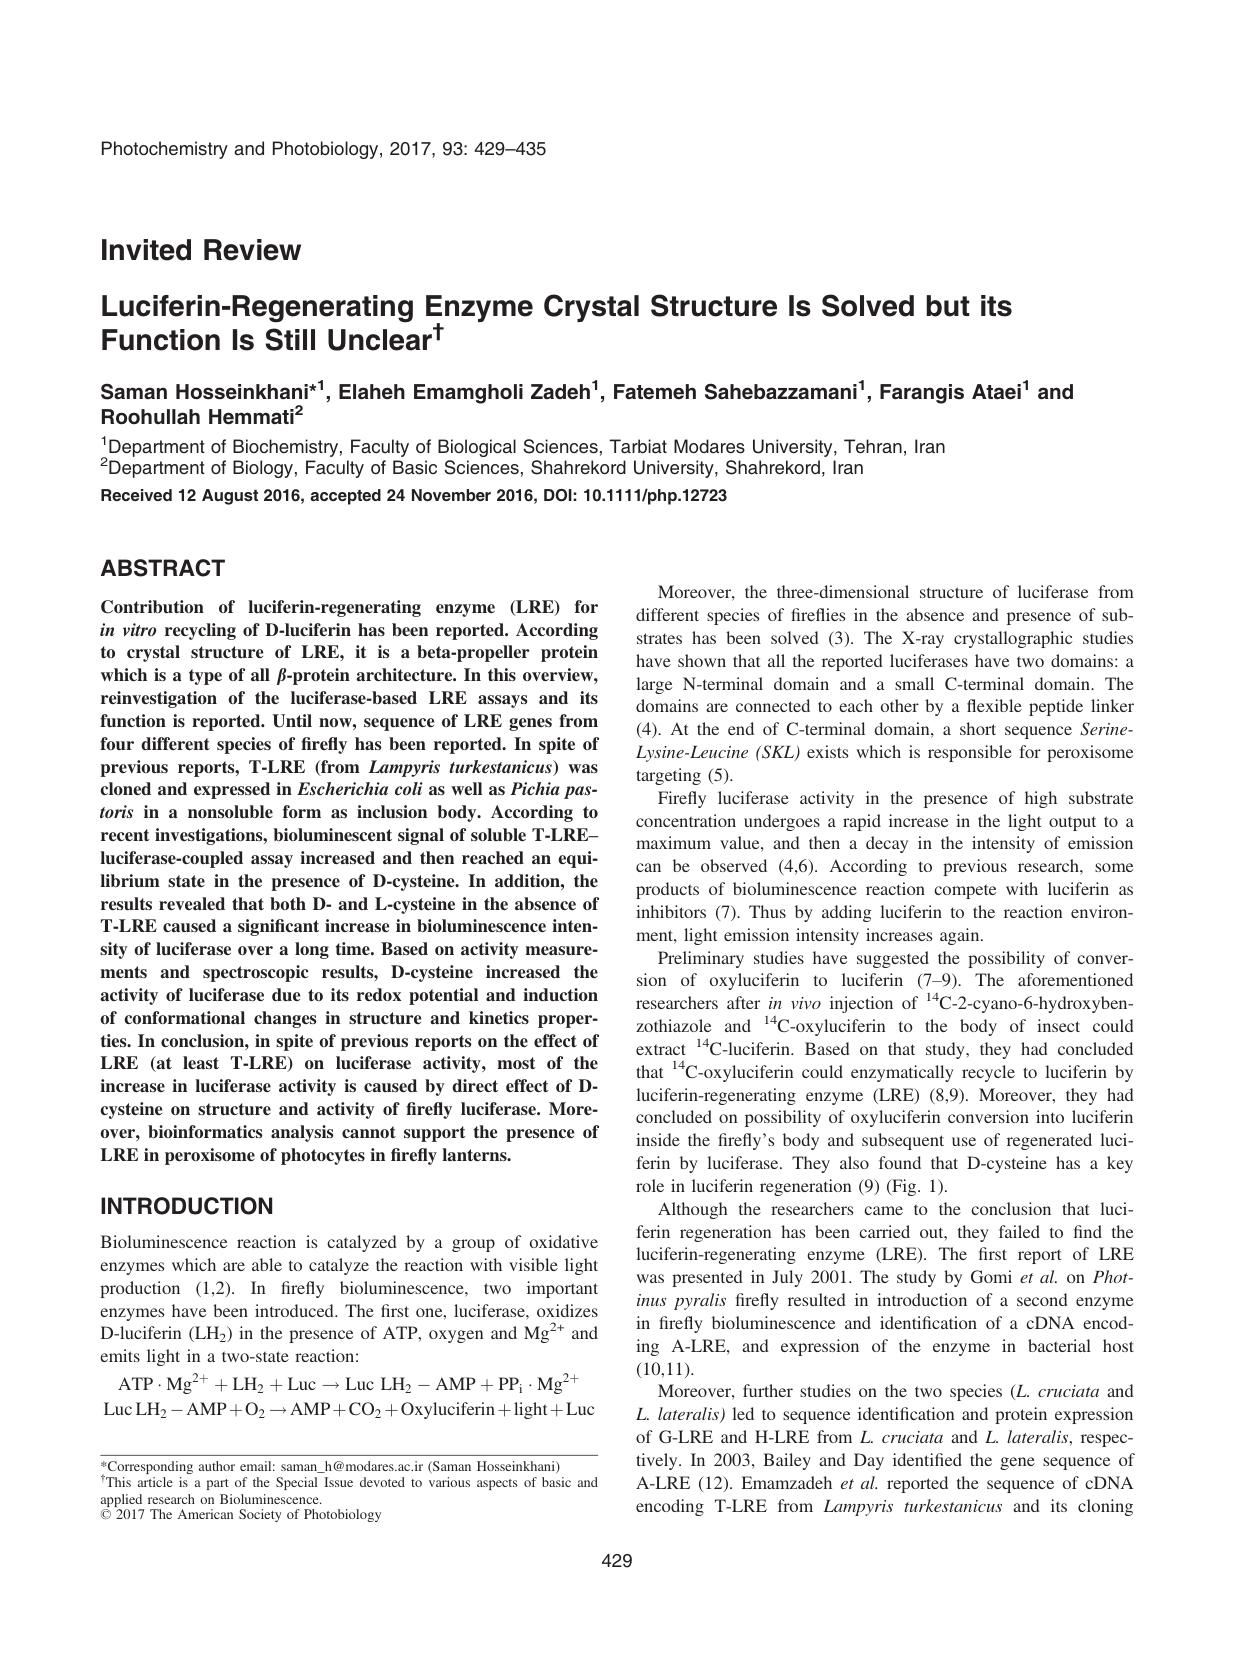 LuciferinâRegenerating Enzyme Crystal Structure Is Solved but its Function Is Still Unclear by Unknown